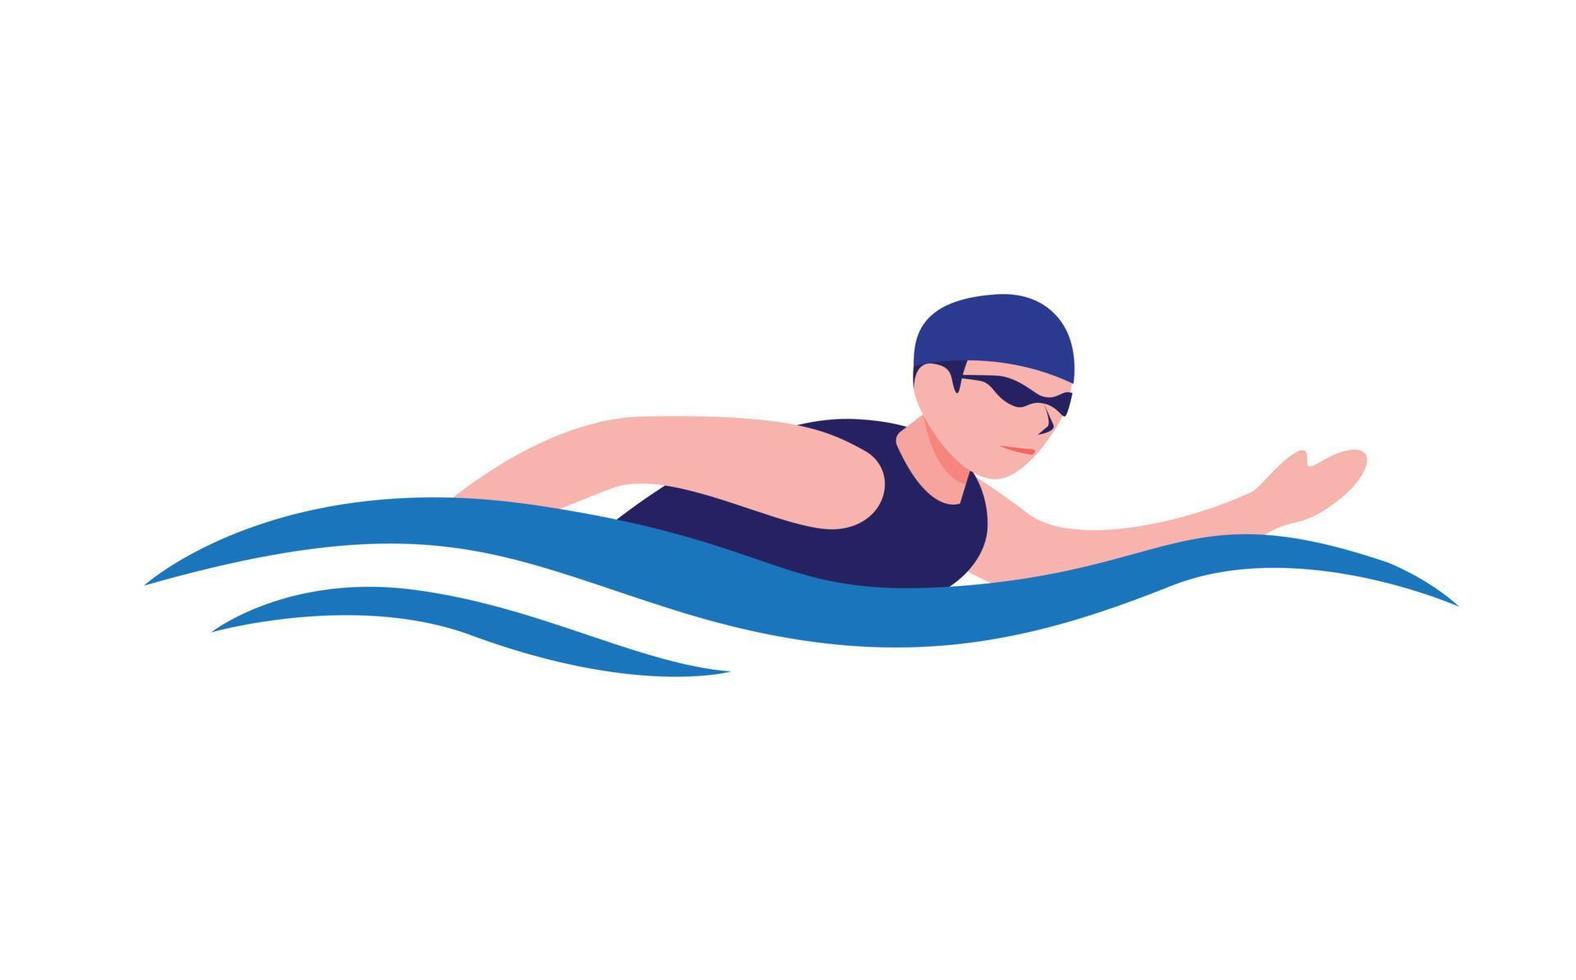 man zwemmen in zwembad of oceaan symbool logo, watersport zwemmen activiteit competitie in cartoon vlakke afbeelding vector